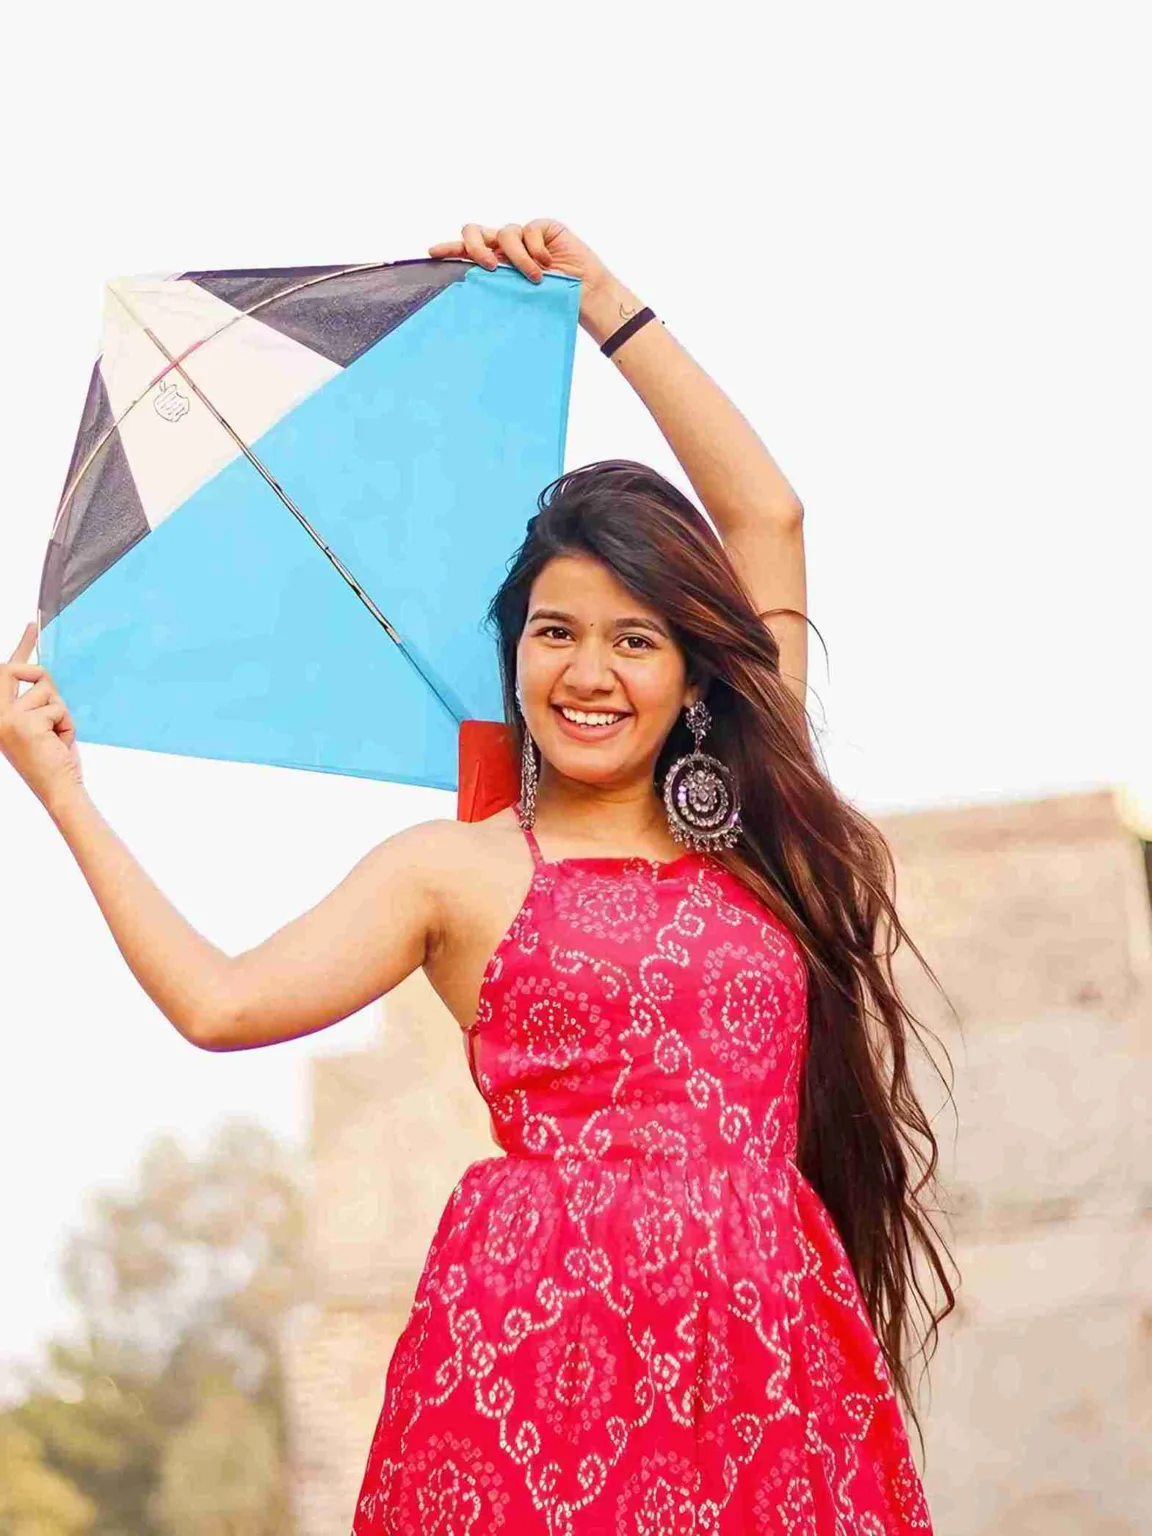 Makar Sankranti Special Girl Image with Kite